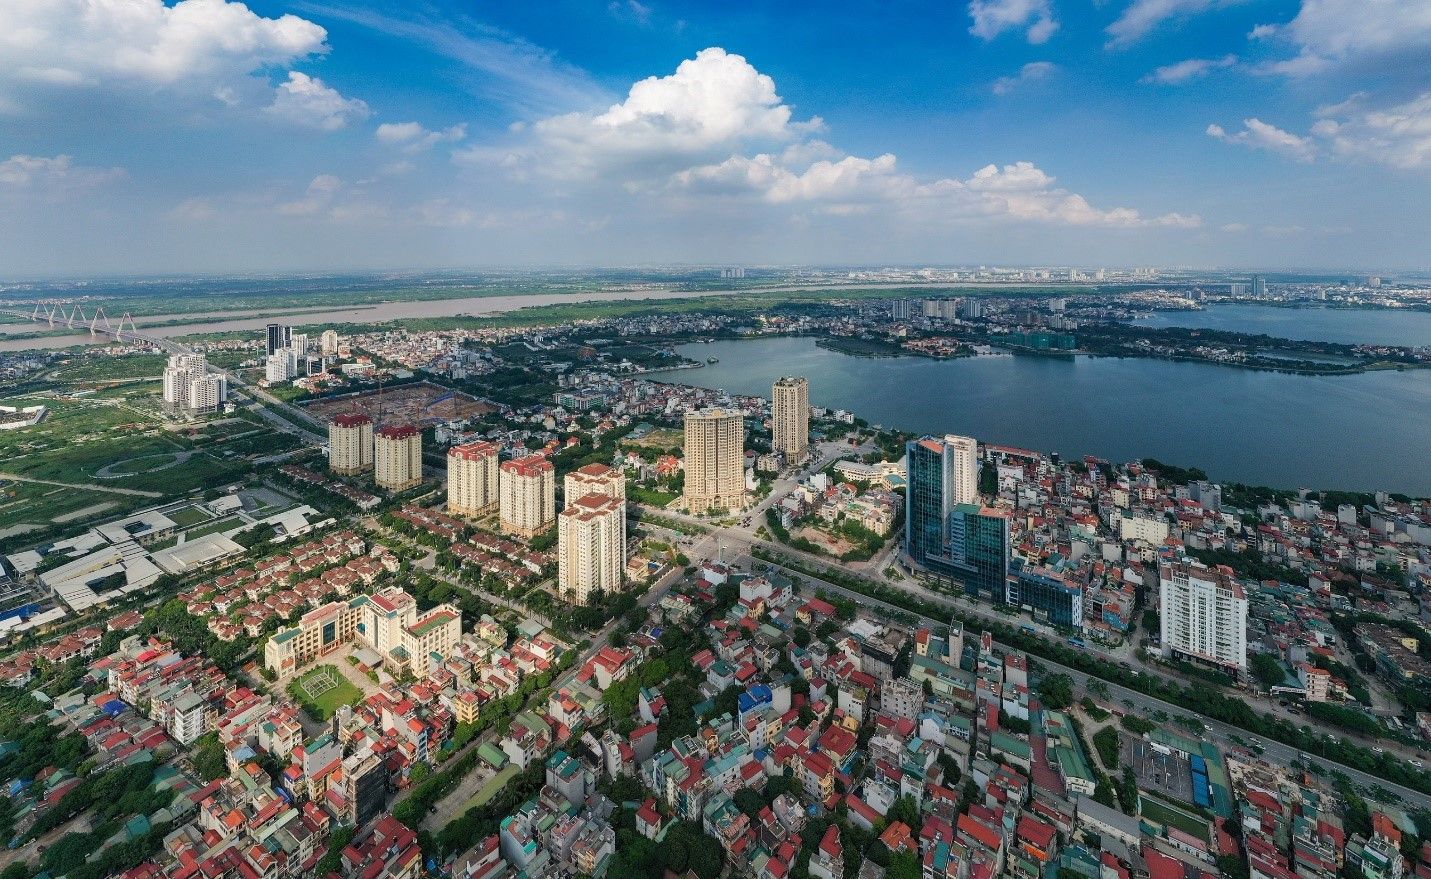 Giá bán nhà riêng, nguyên căn đường Hoàng Quốc Việt, quận Tây Hồ hiện tại là bao nhiêu?